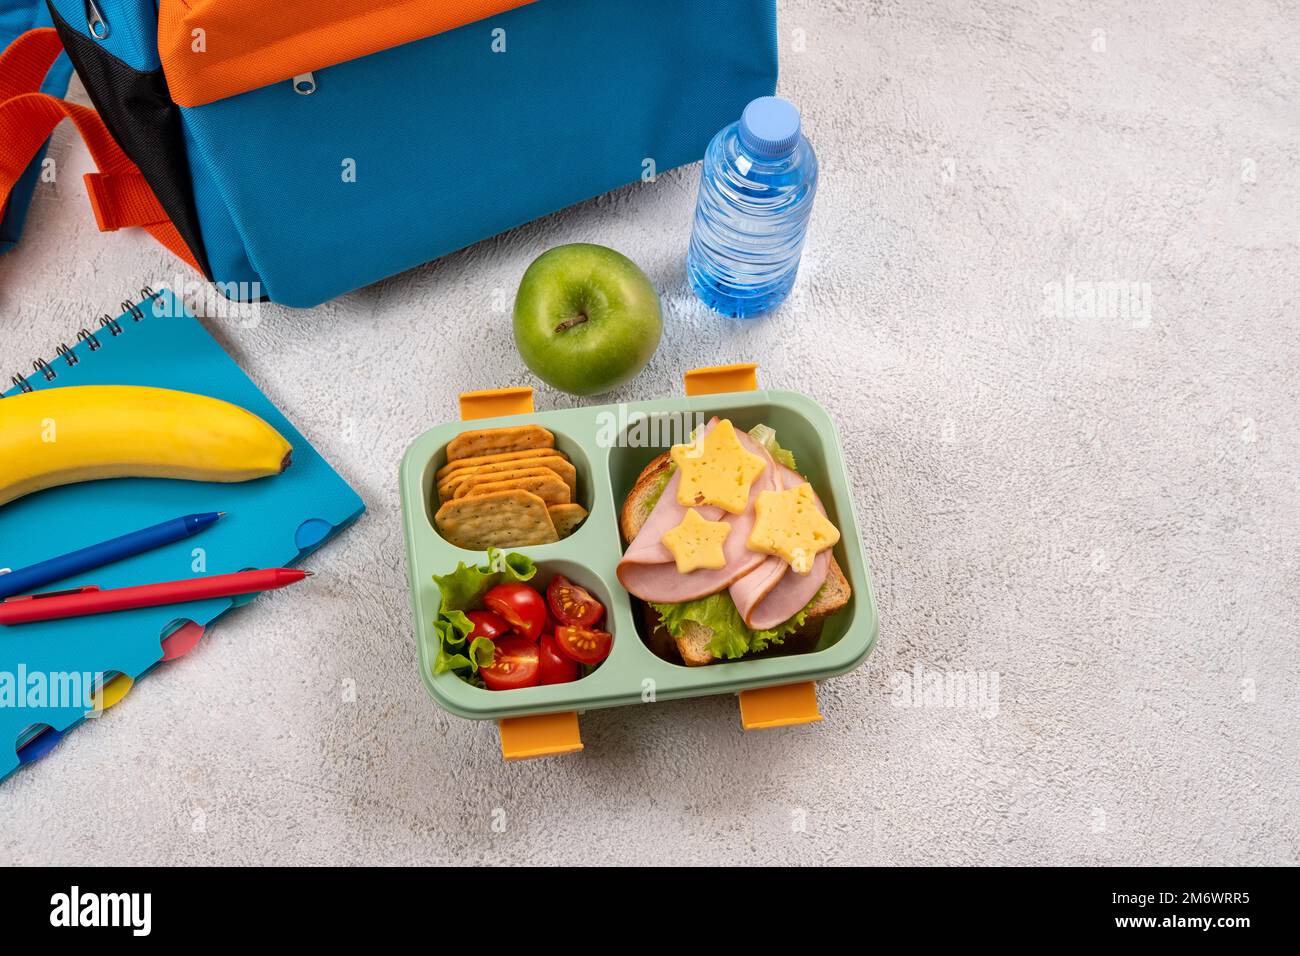 Pranzo al sacco a scuola sano con panino e insalata sul posto di lavoro vicino zaino. Forniture scolastiche, libri, mela e una bottiglia di w Foto Stock